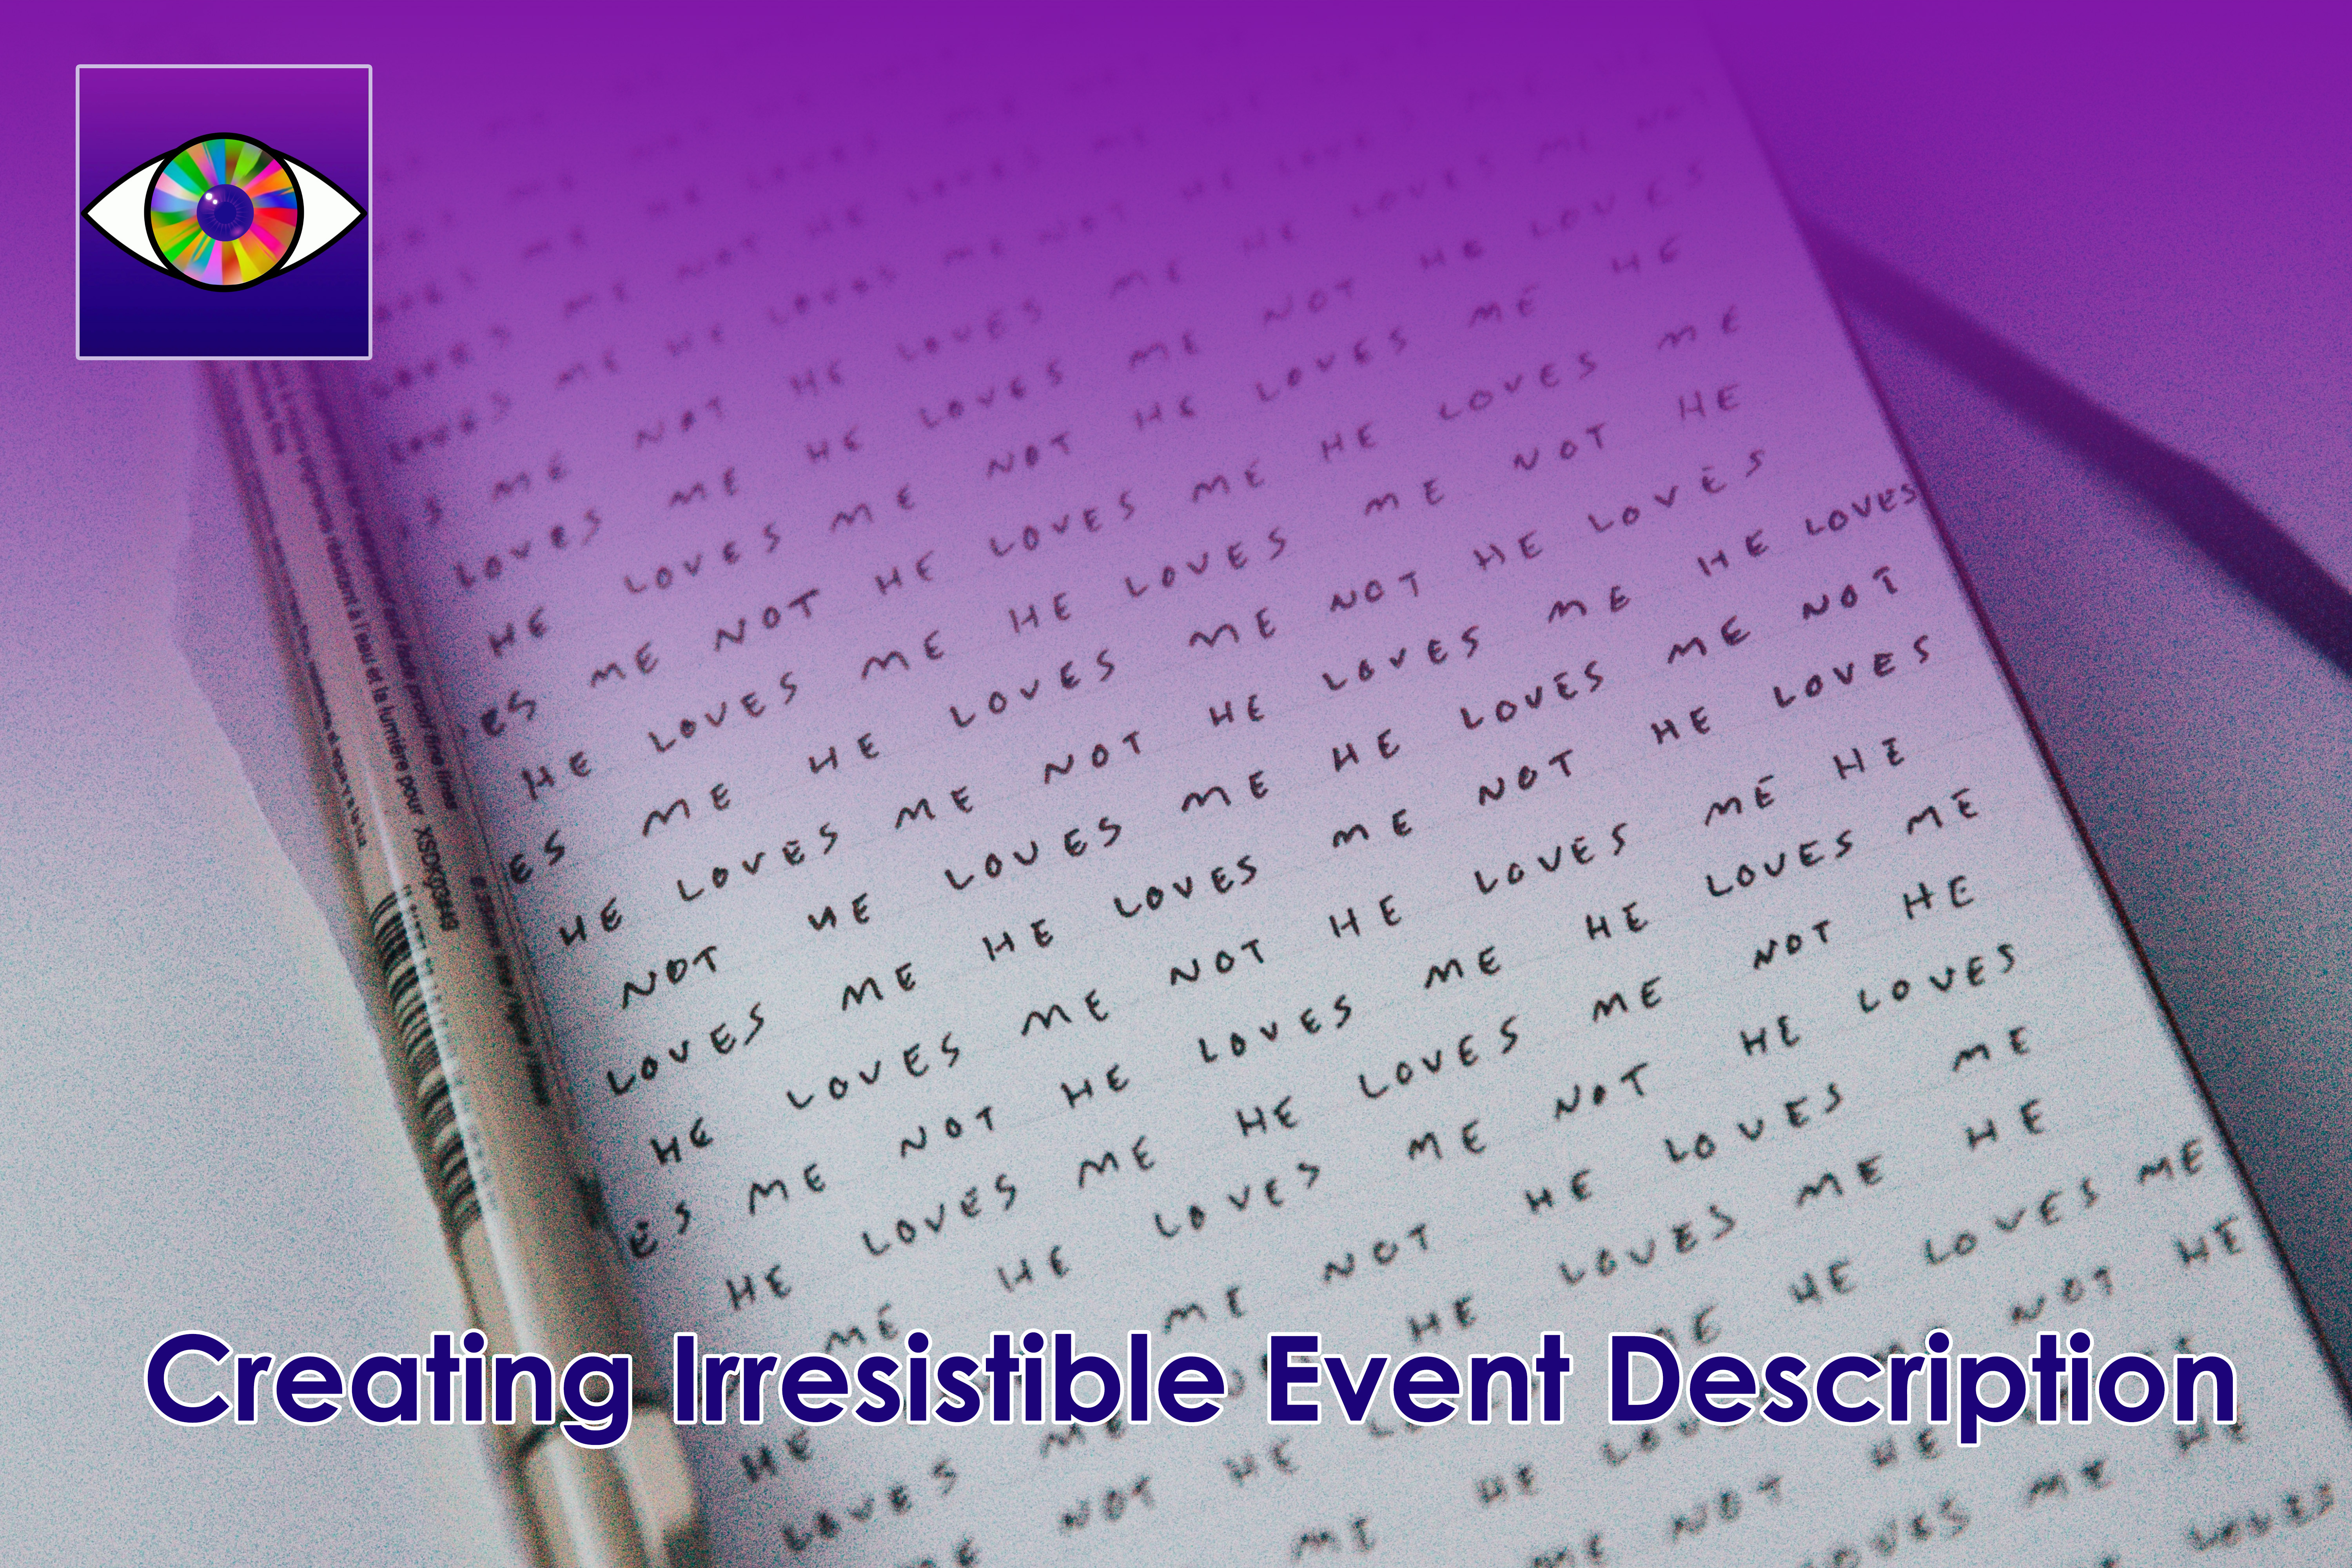 Creating an irresistible event description